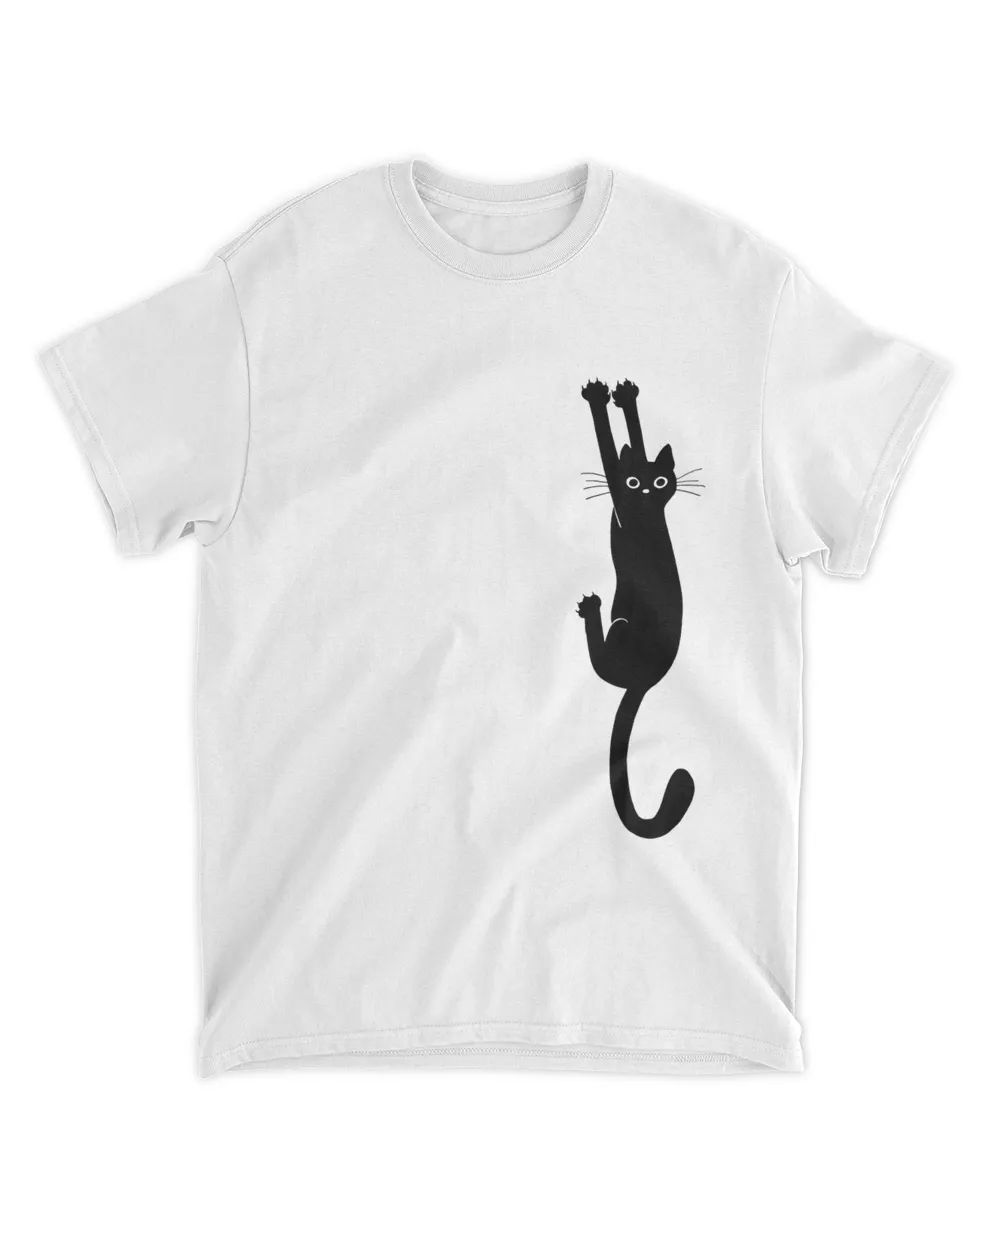 Black Cat Holding On Shirt Unisex Standard T-Shirt white 